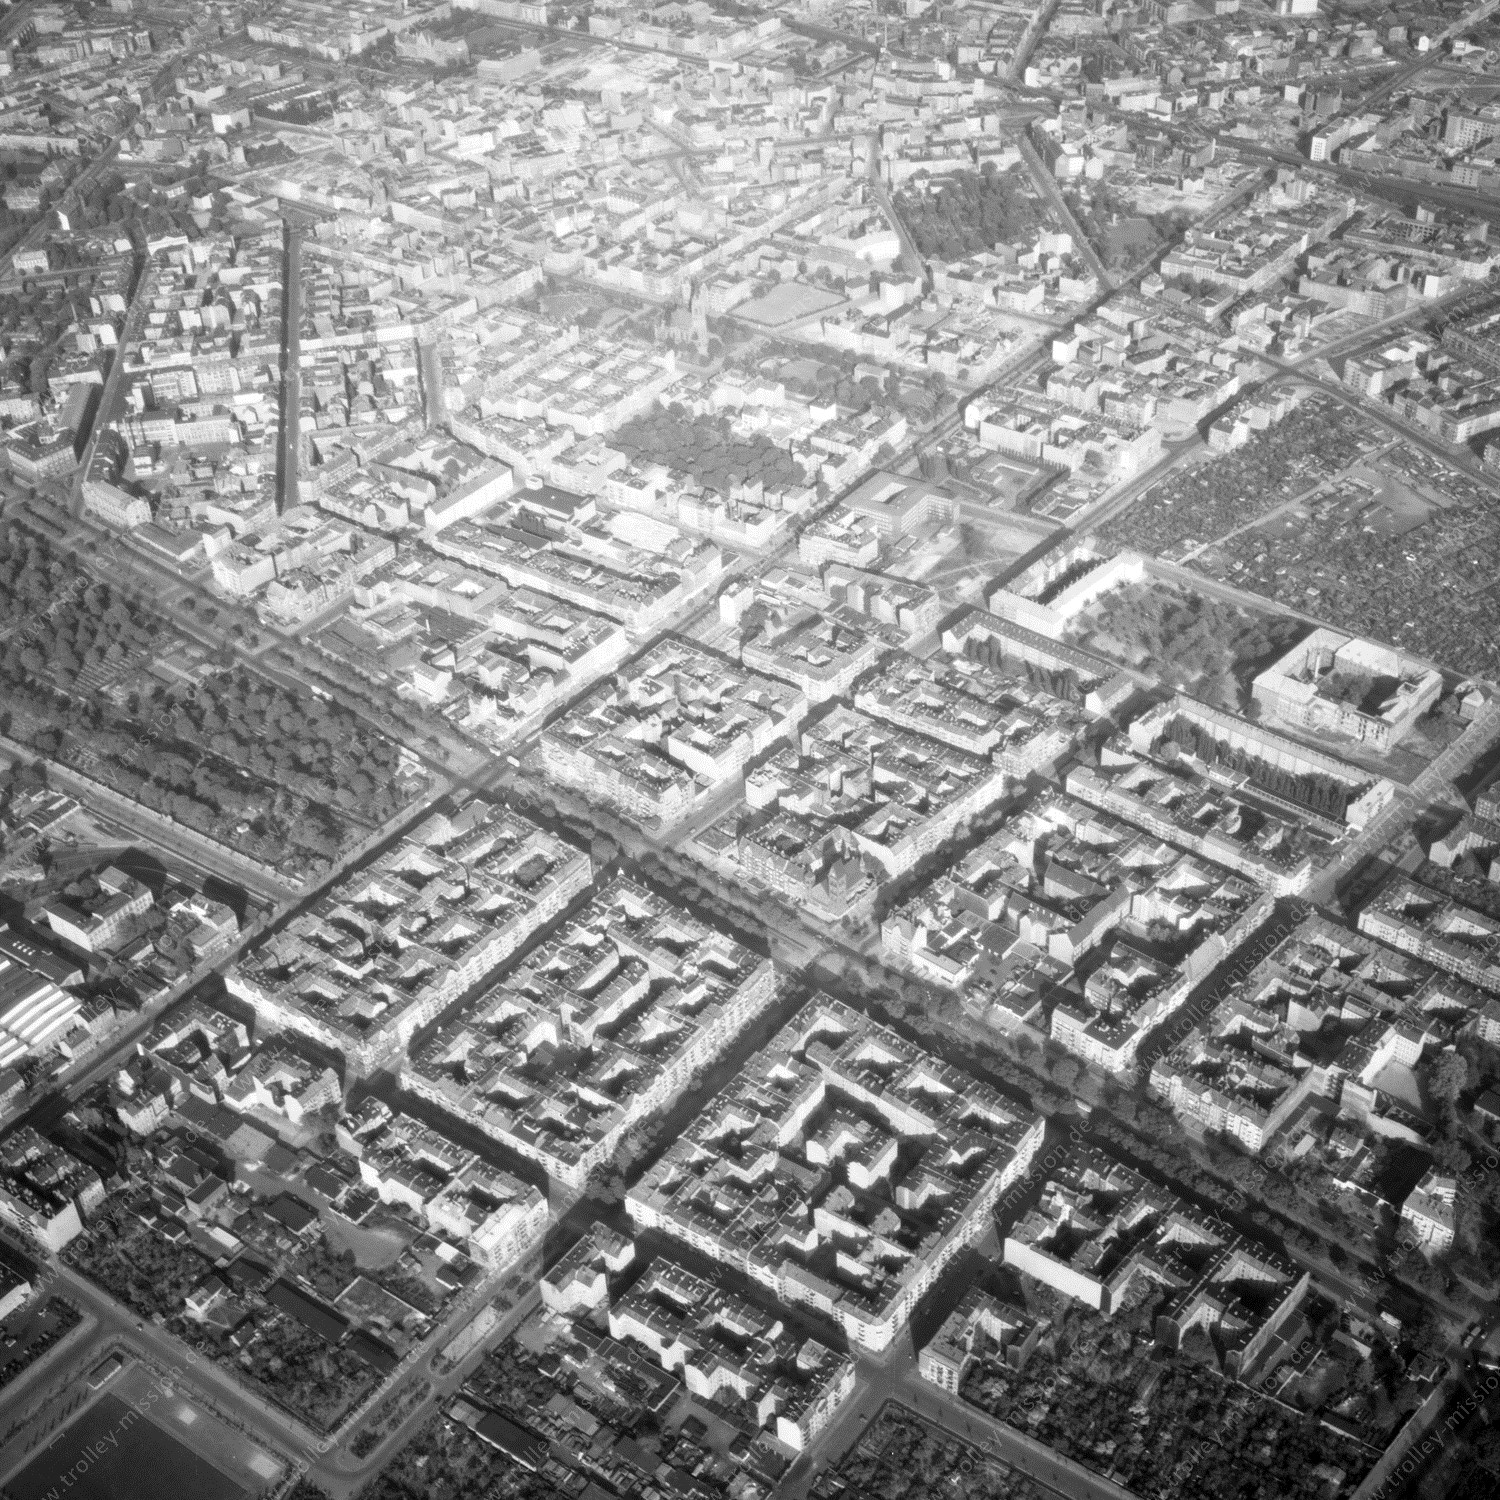 Alte Fotos und Luftbilder von Berlin - Luftbildaufnahme Nr. 10 - Historische Luftaufnahmen von West-Berlin aus dem Jahr 1954 - Flugstrecke Oscar